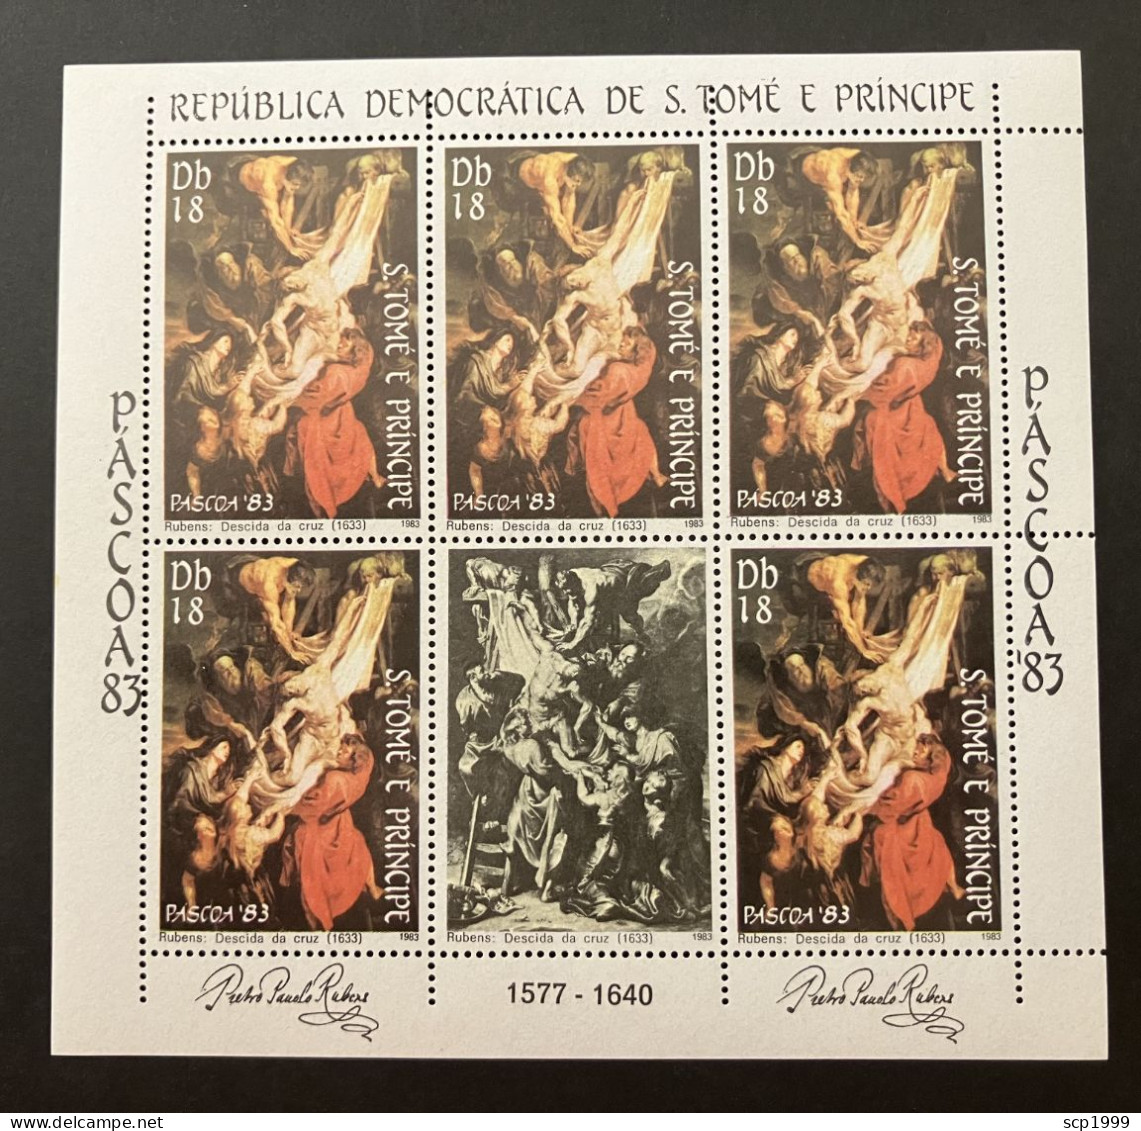 São Tomé & Príncipe 1983 - P. P. Rubens, Descent From The Cross Mini-sheet MNH - Sao Tome And Principe